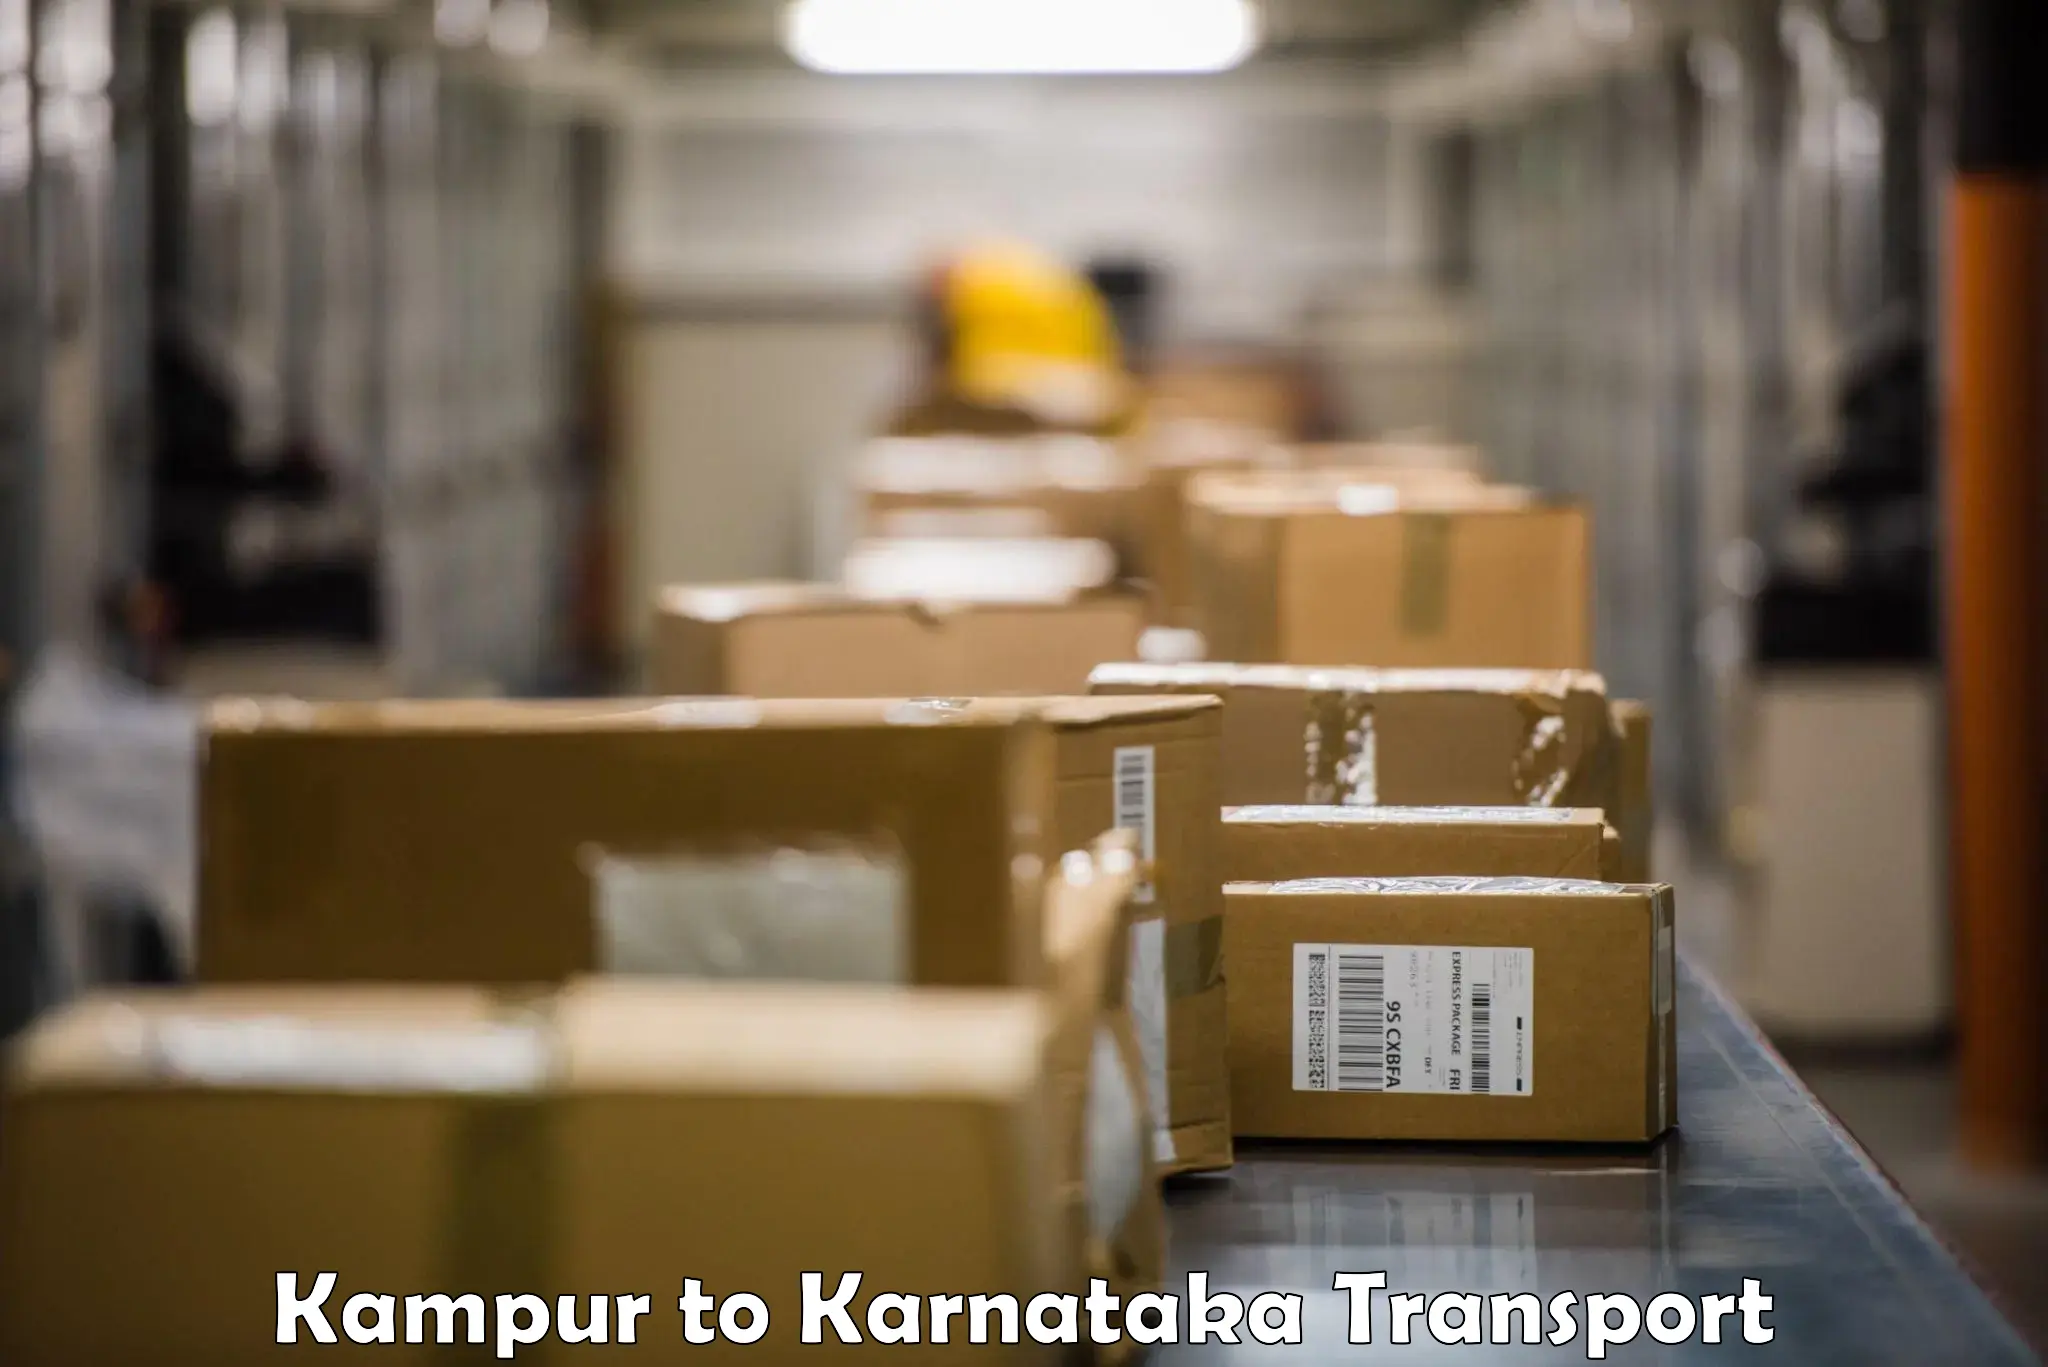 Furniture transport service Kampur to Mudhol